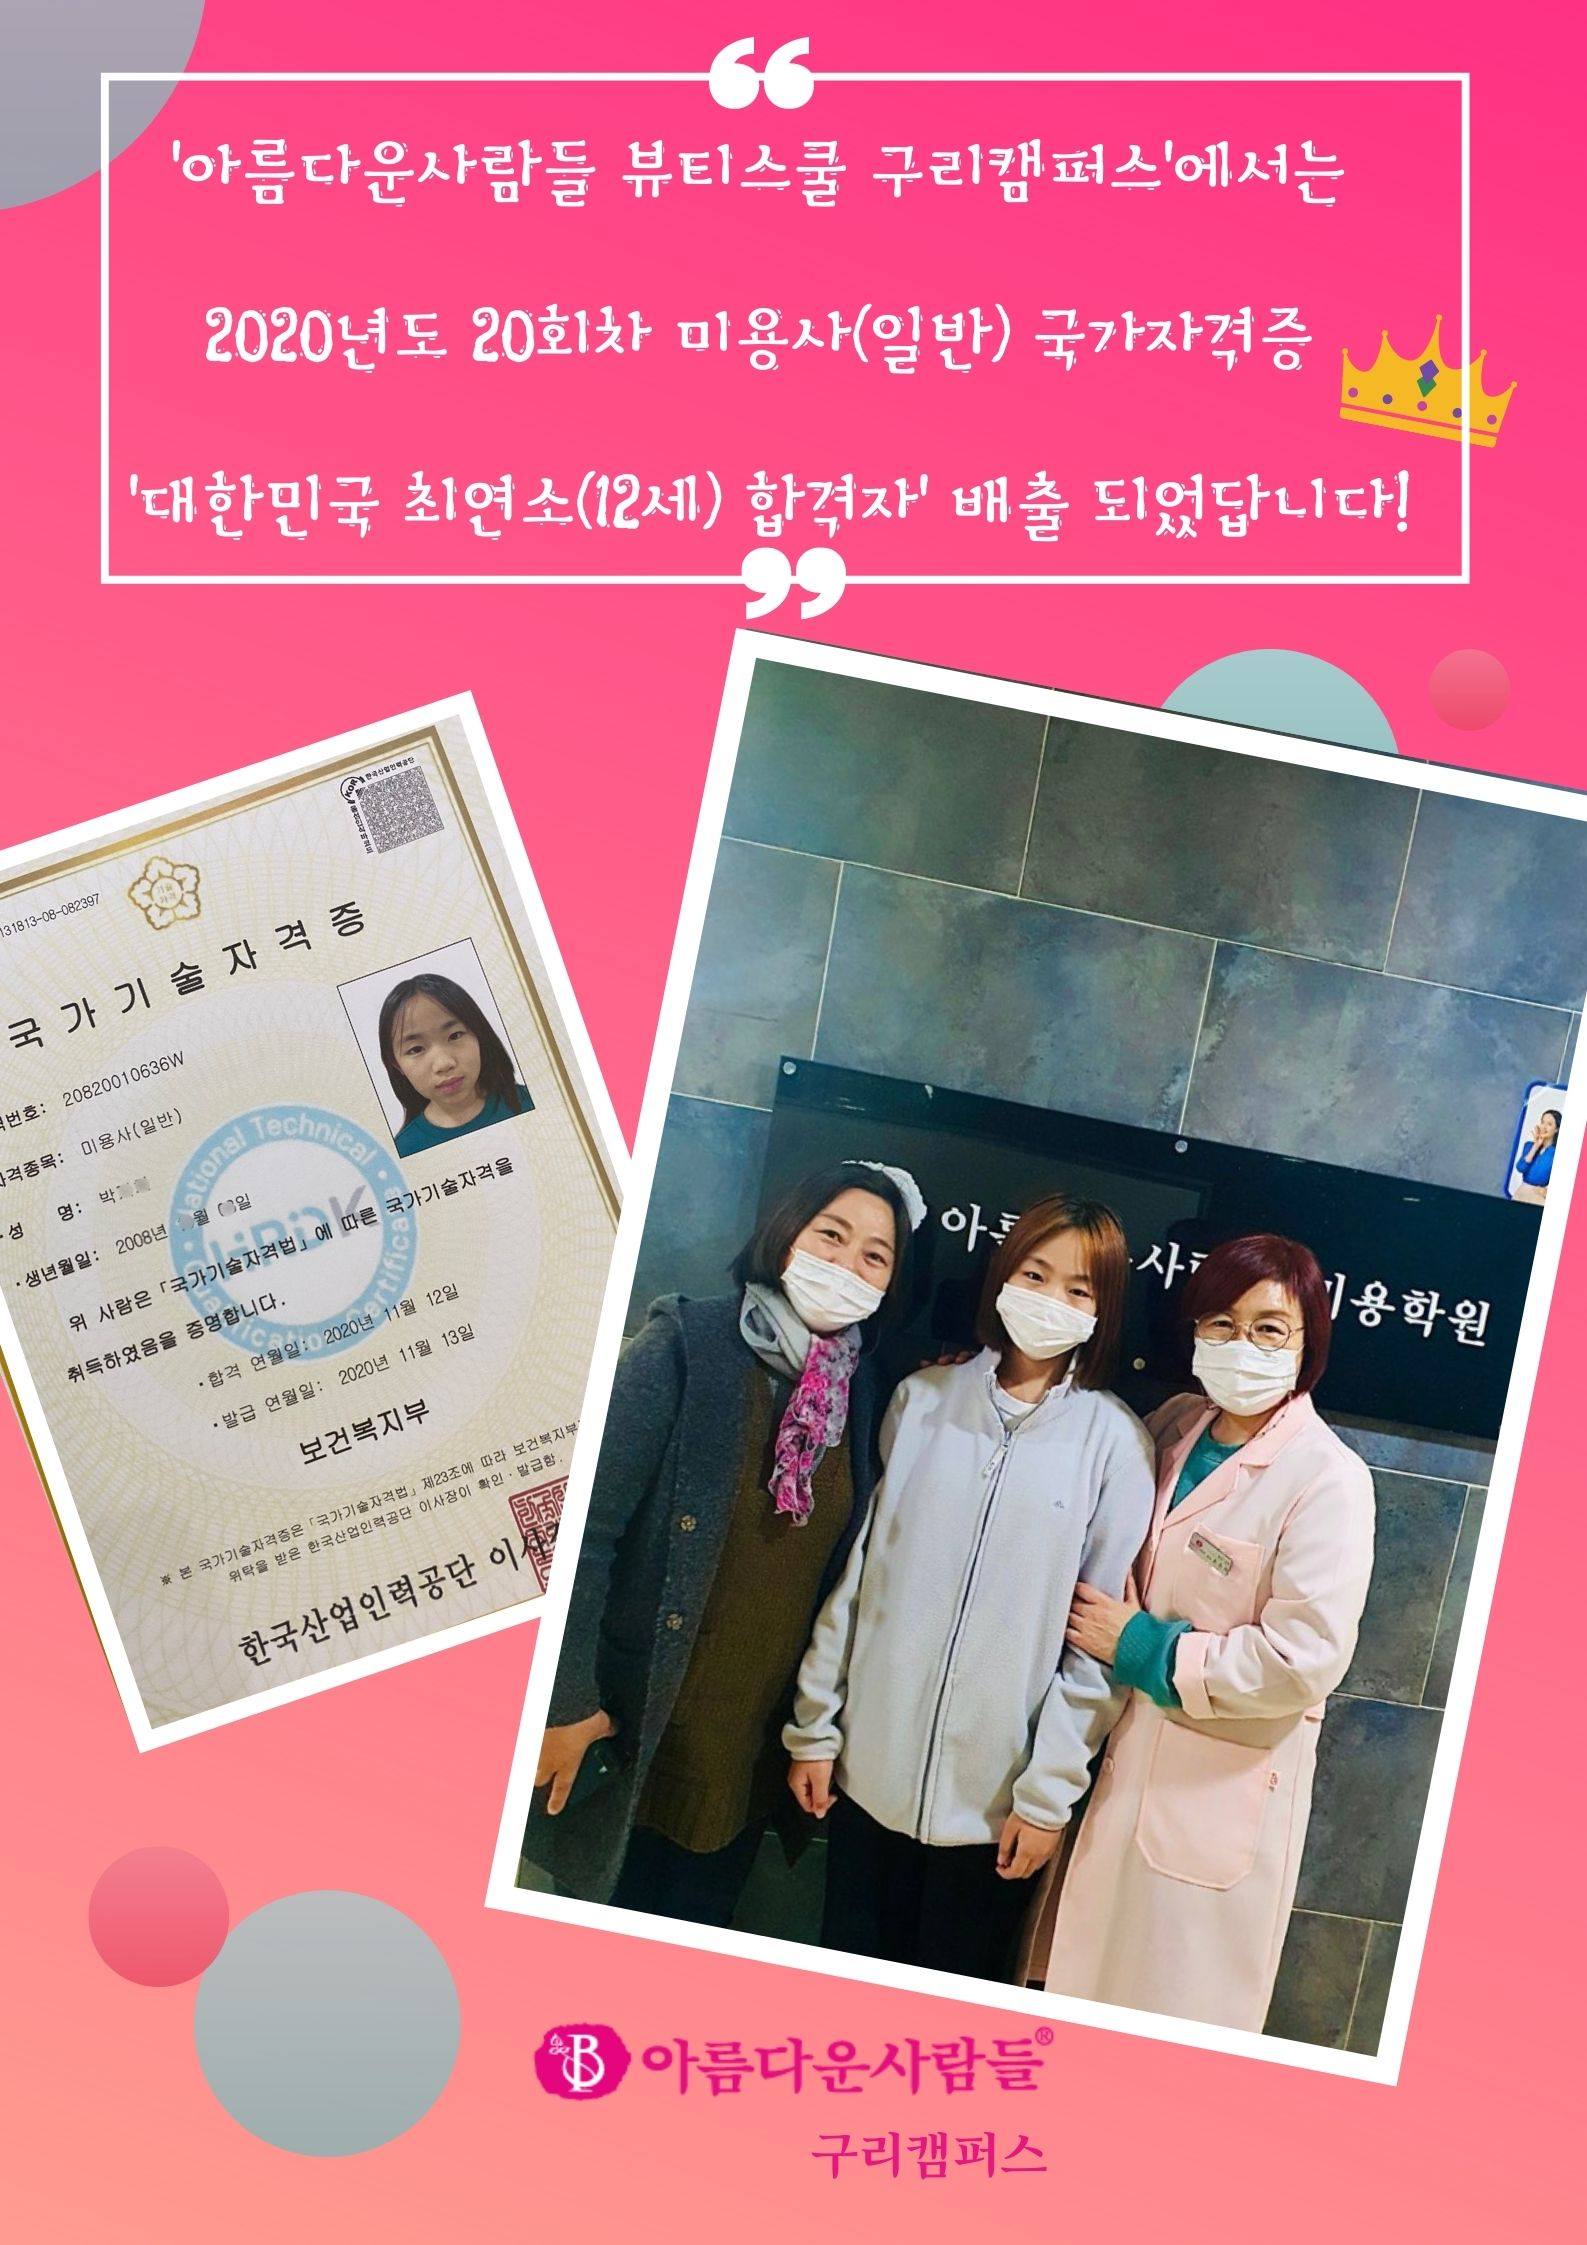 대한민국 미용사(일반) 합격자 배출, 박지희(12)학생